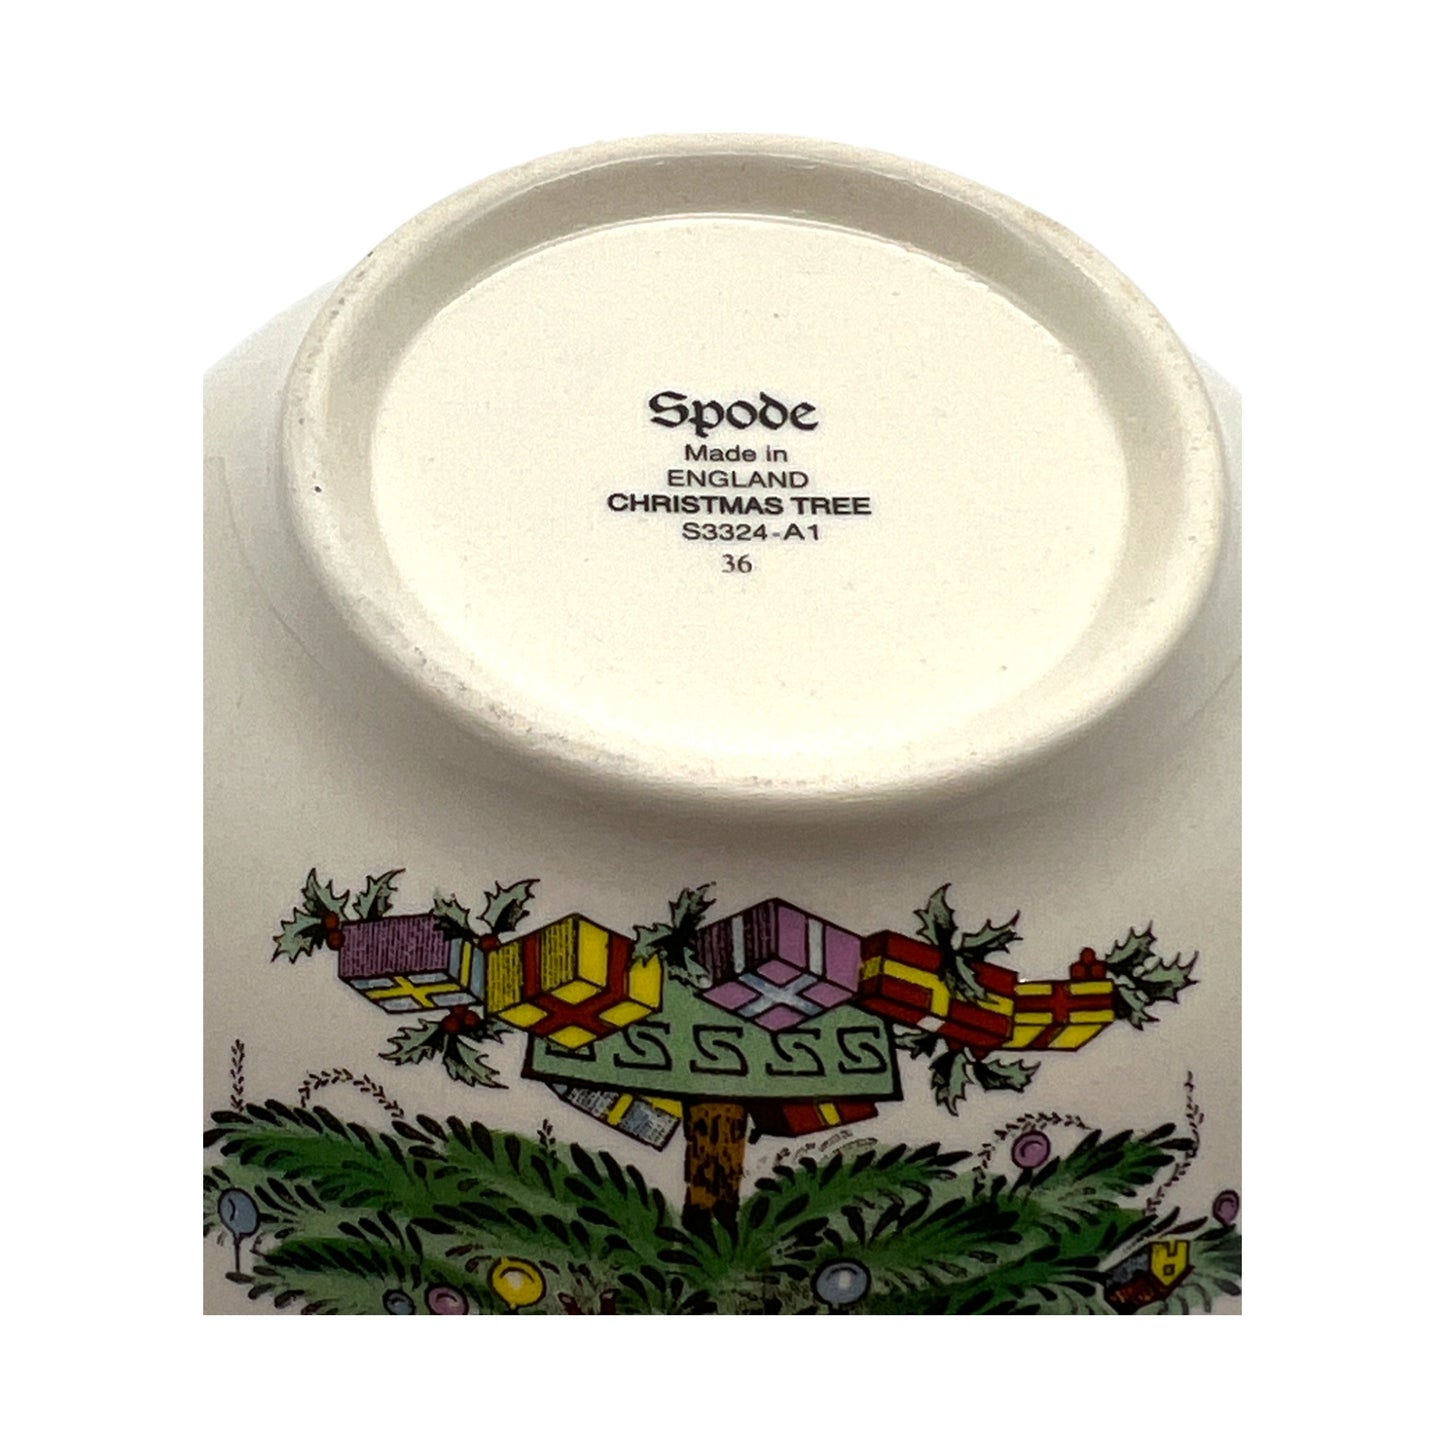 Spode - Christmas Tree Nut Bowl - Original Box - 5.5"